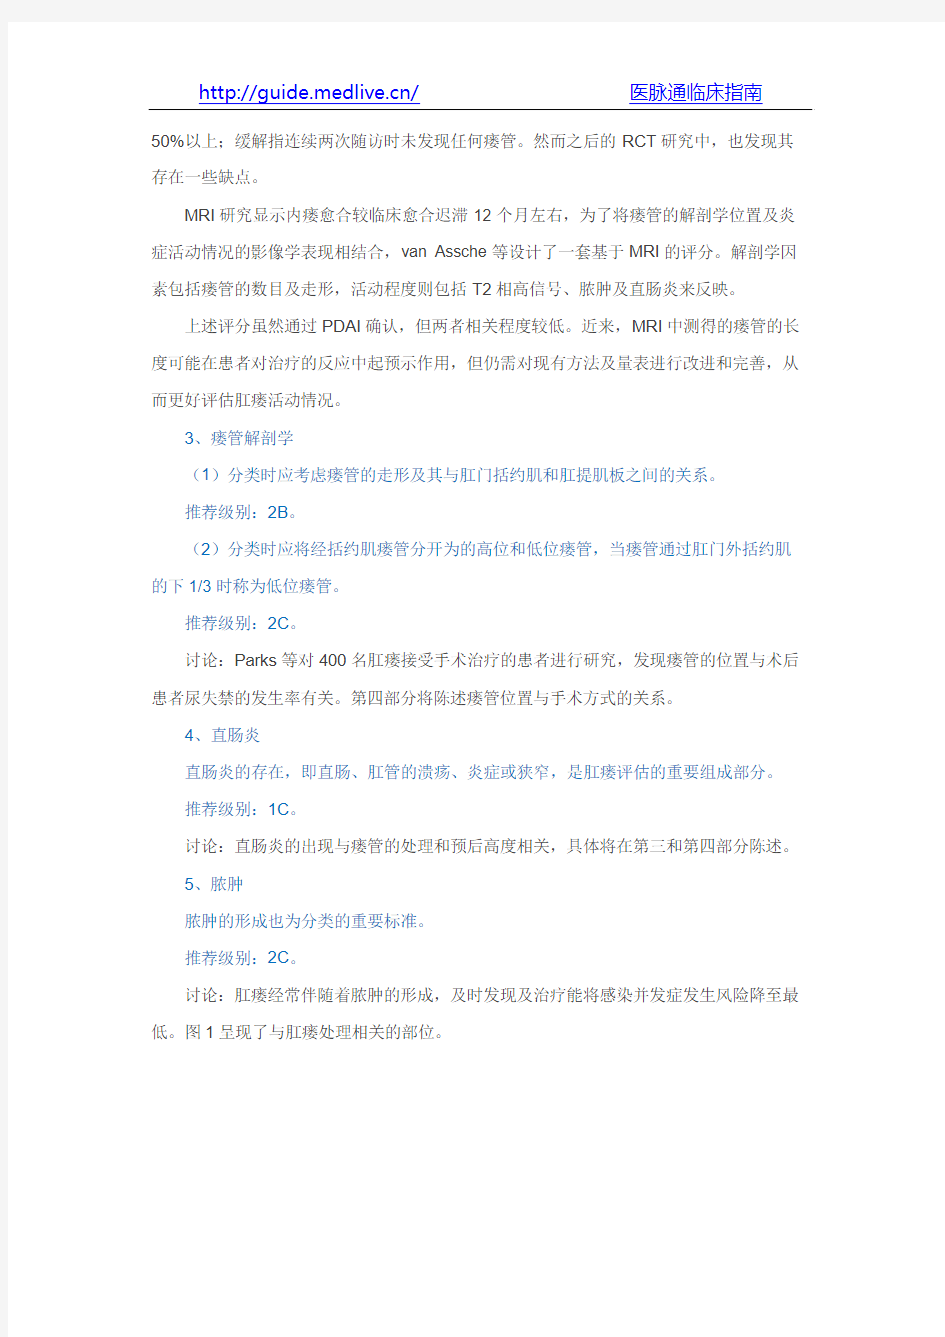 2014年克罗恩病肛瘘分类、诊断及治疗的全球共识(中文版)